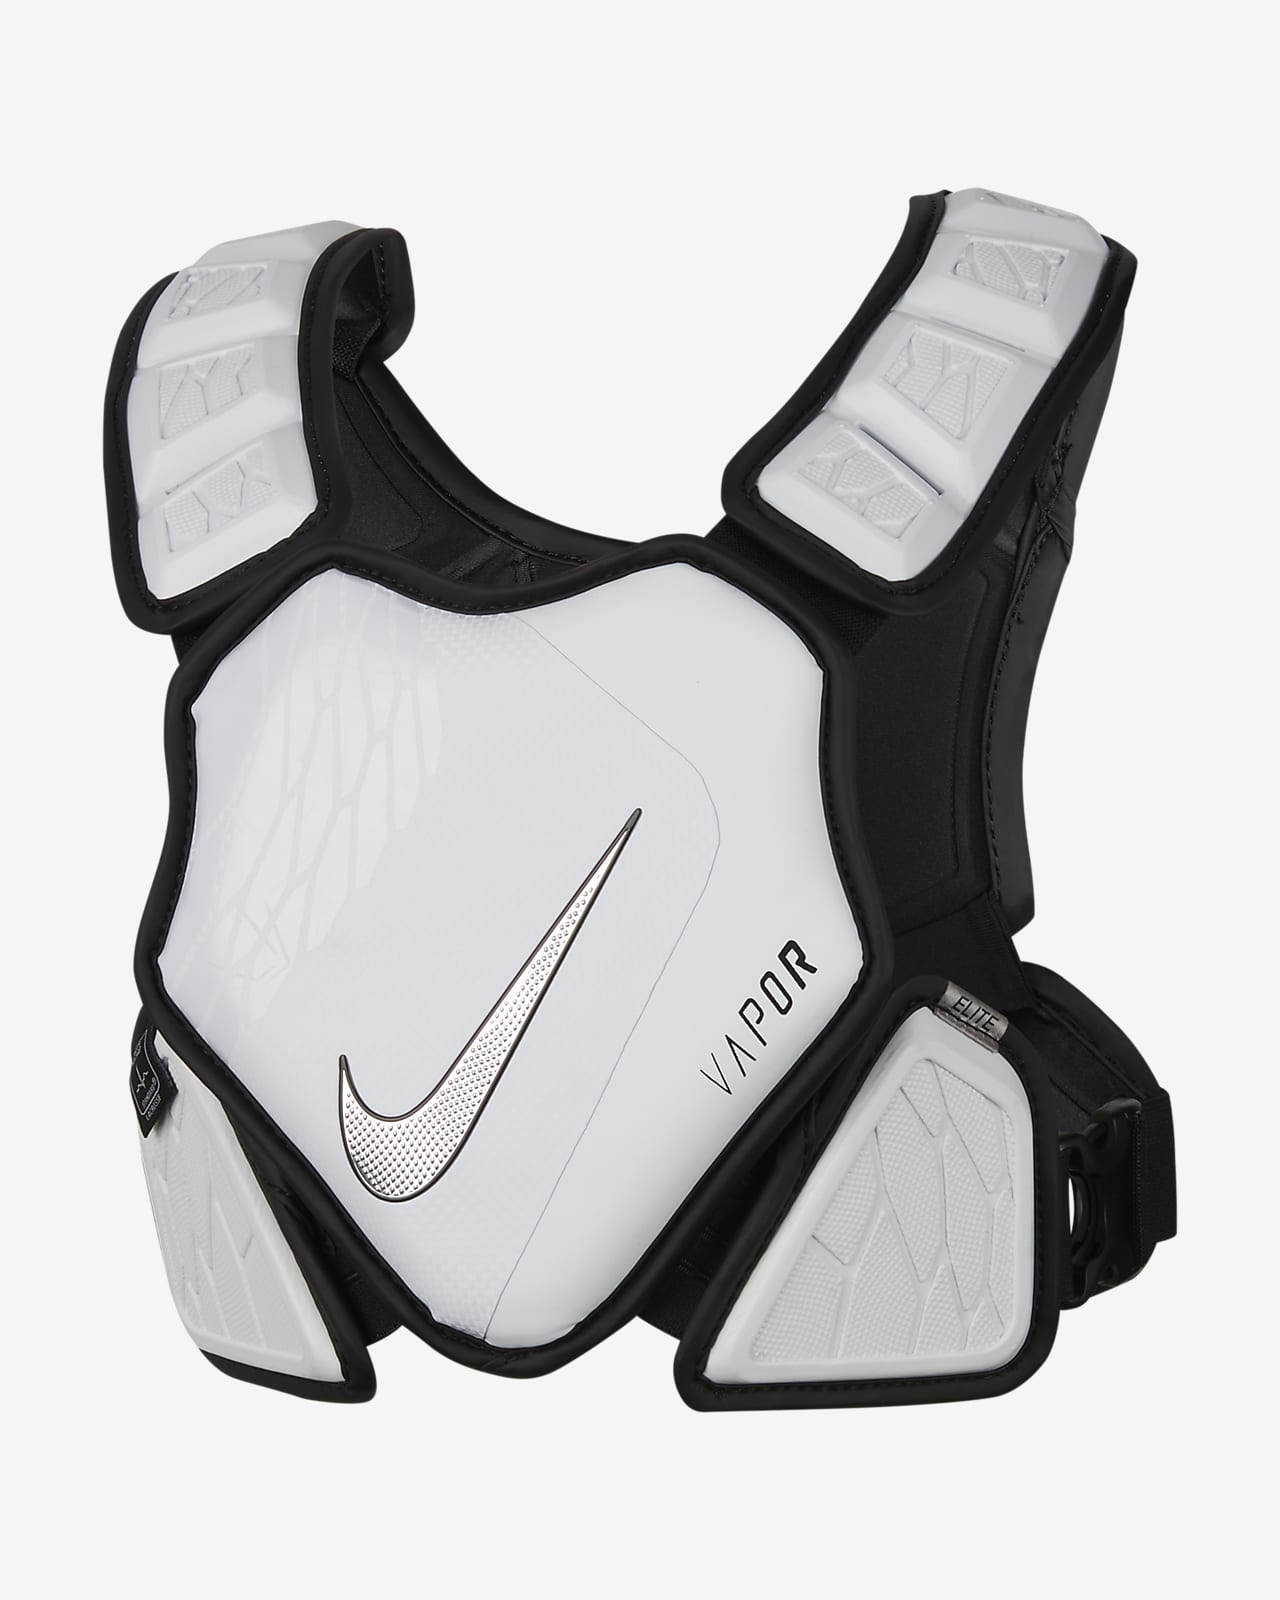 Nike Vapor Elite Men's Lacrosse Shoulder Pad Liner